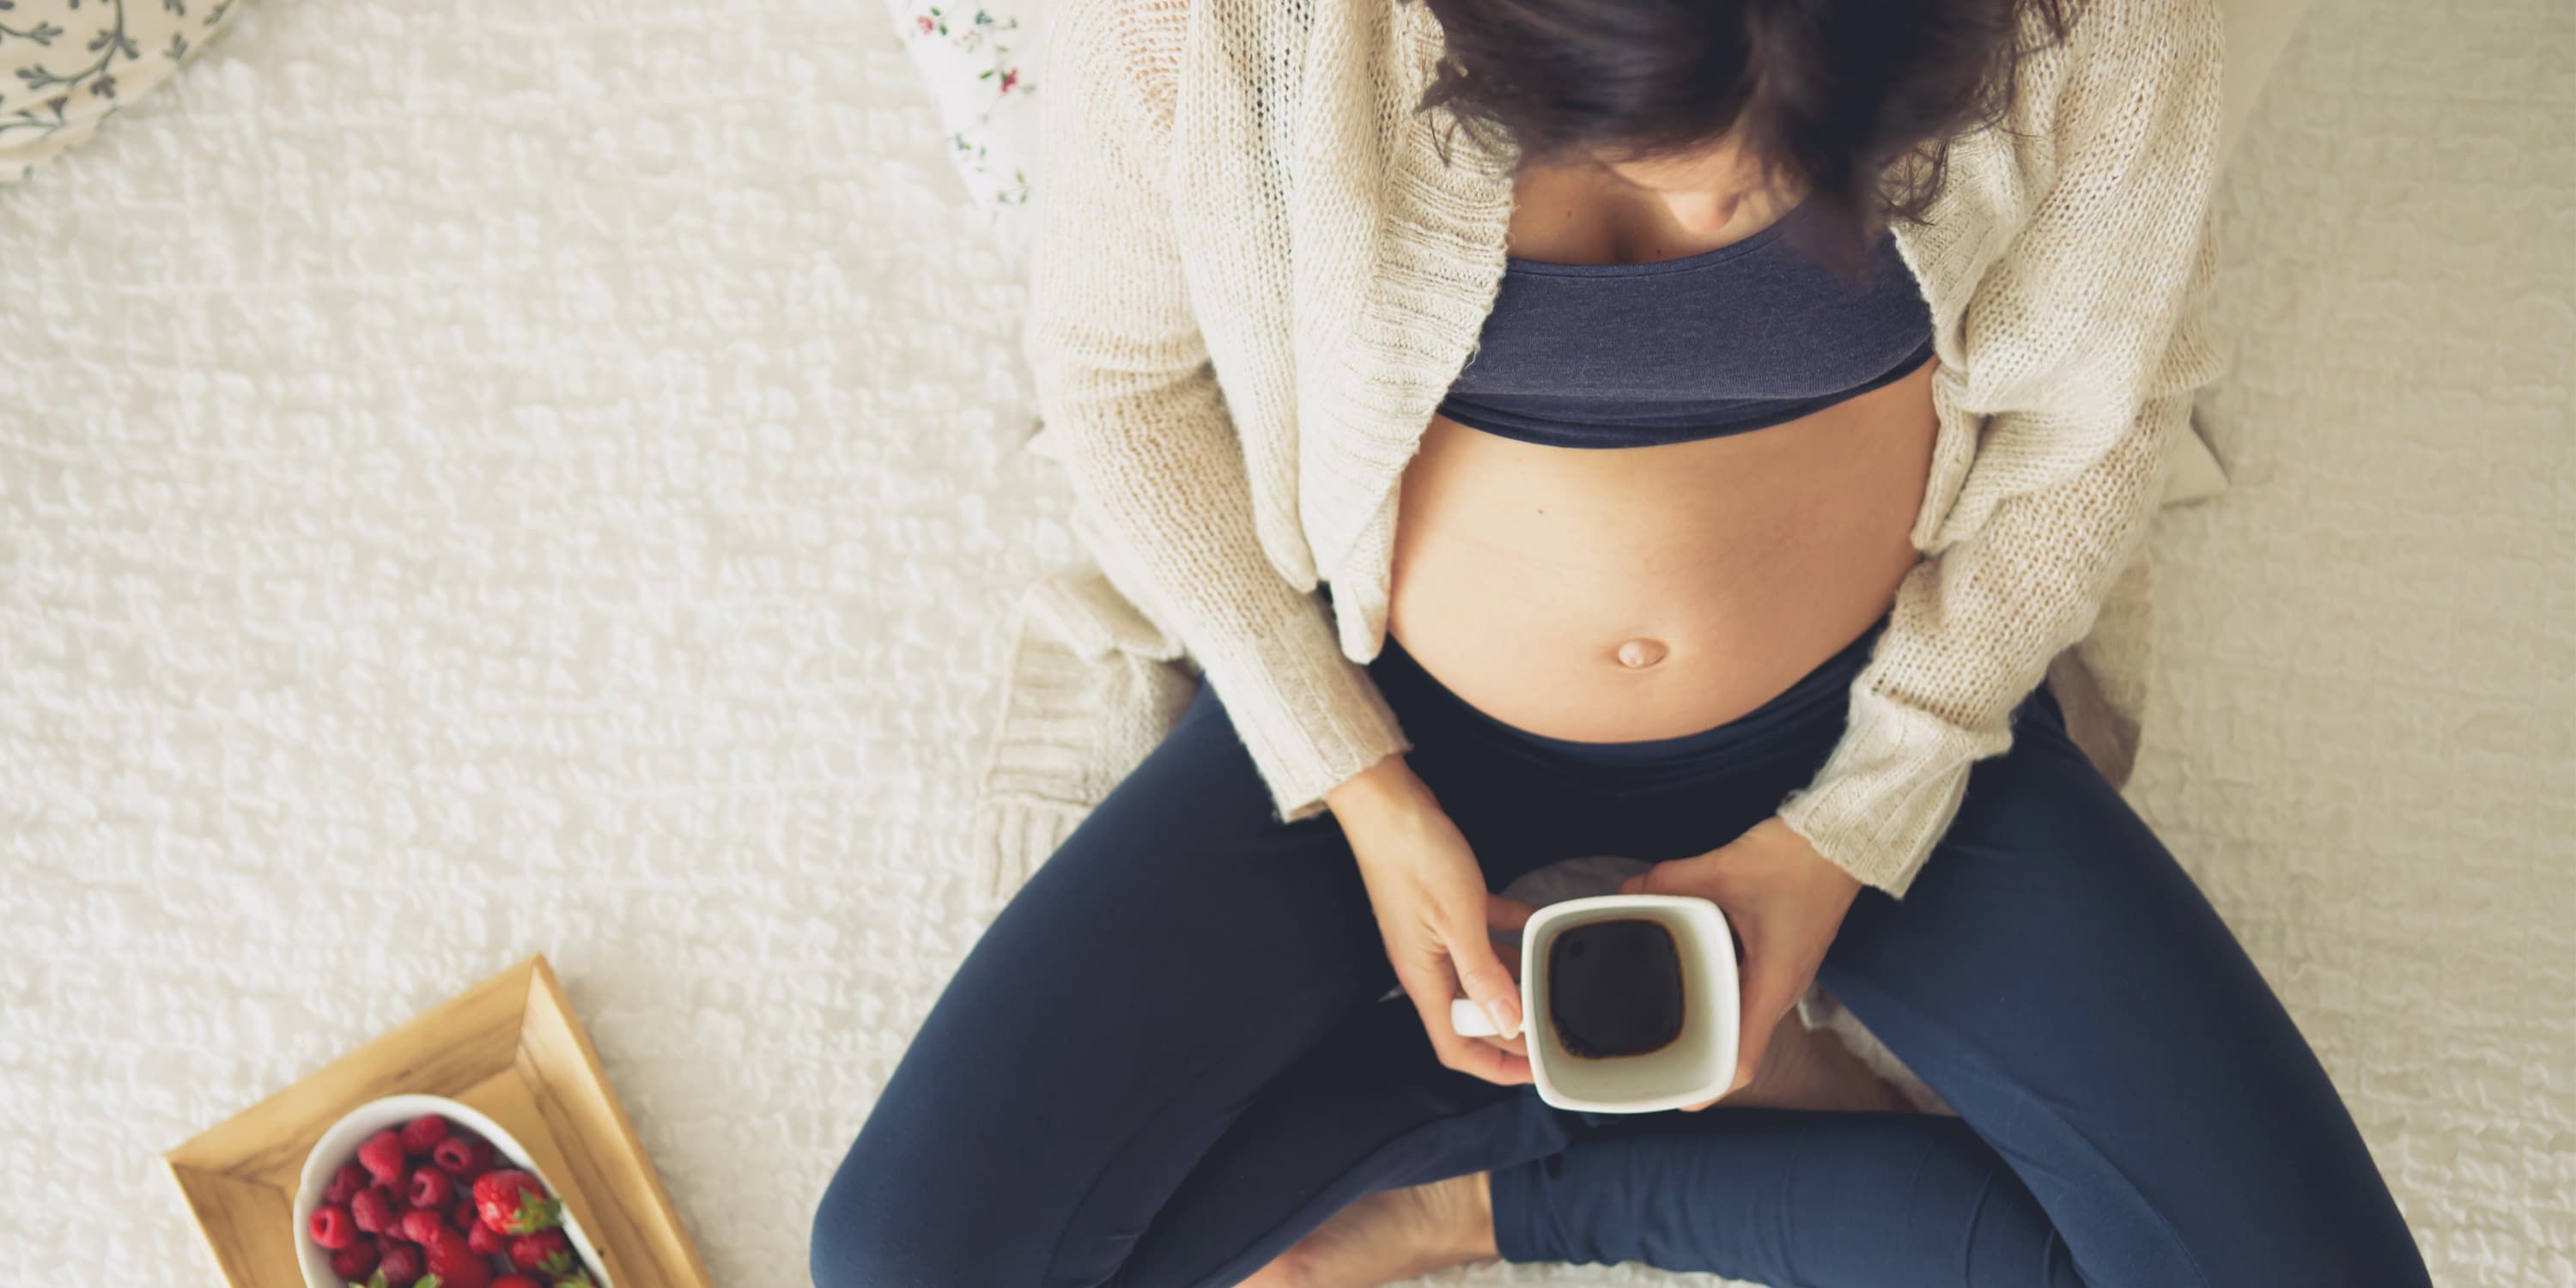 Έγκυος γυναίκα κάθεται με καφέ και φράουλες πάνω σε μια κουβέρτα στο πάτωμα.